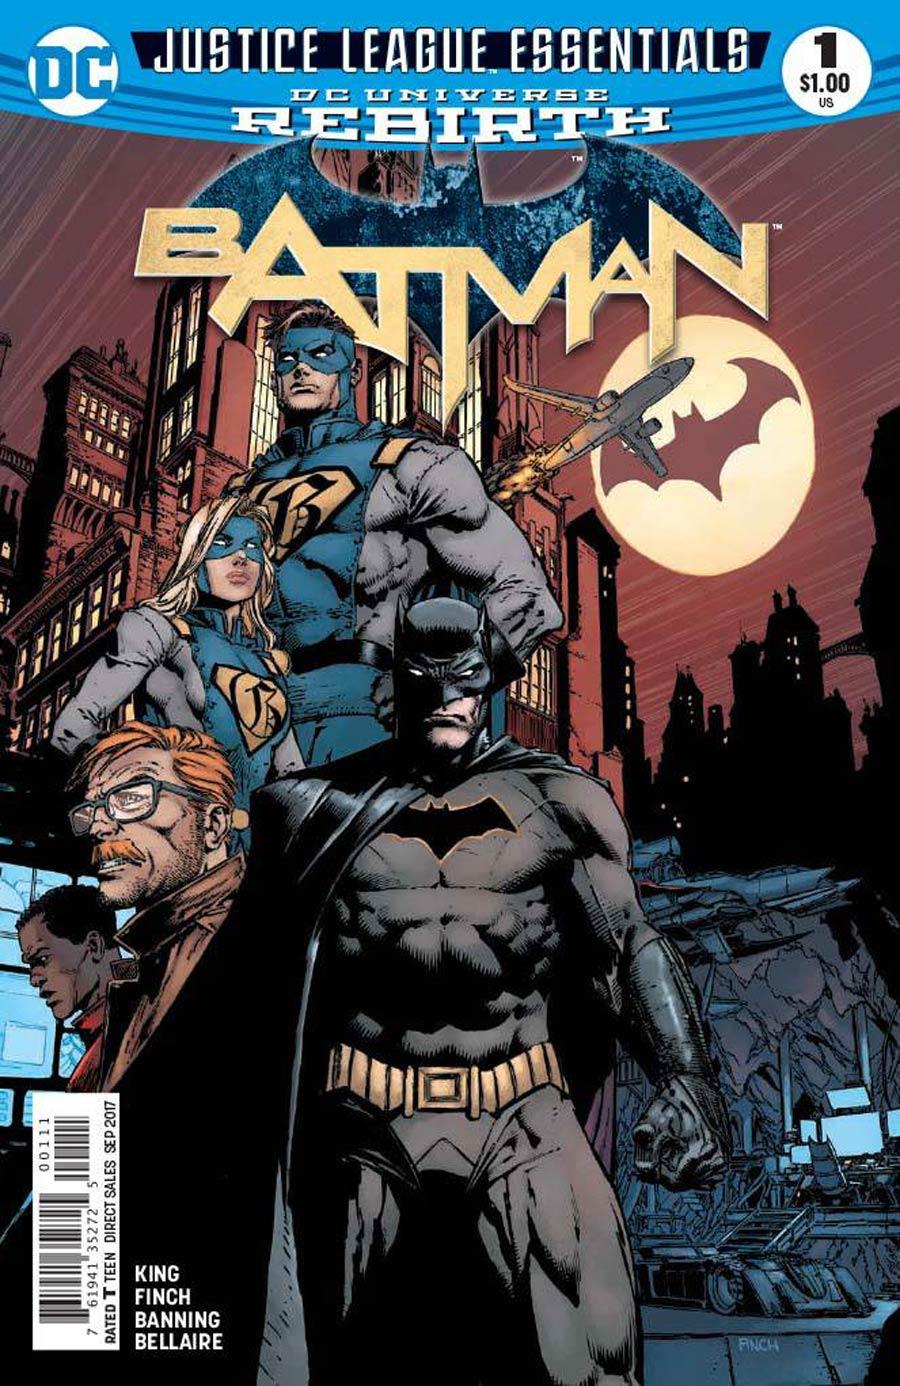 DC Justice League Essentials Batman Vol. 1 #1